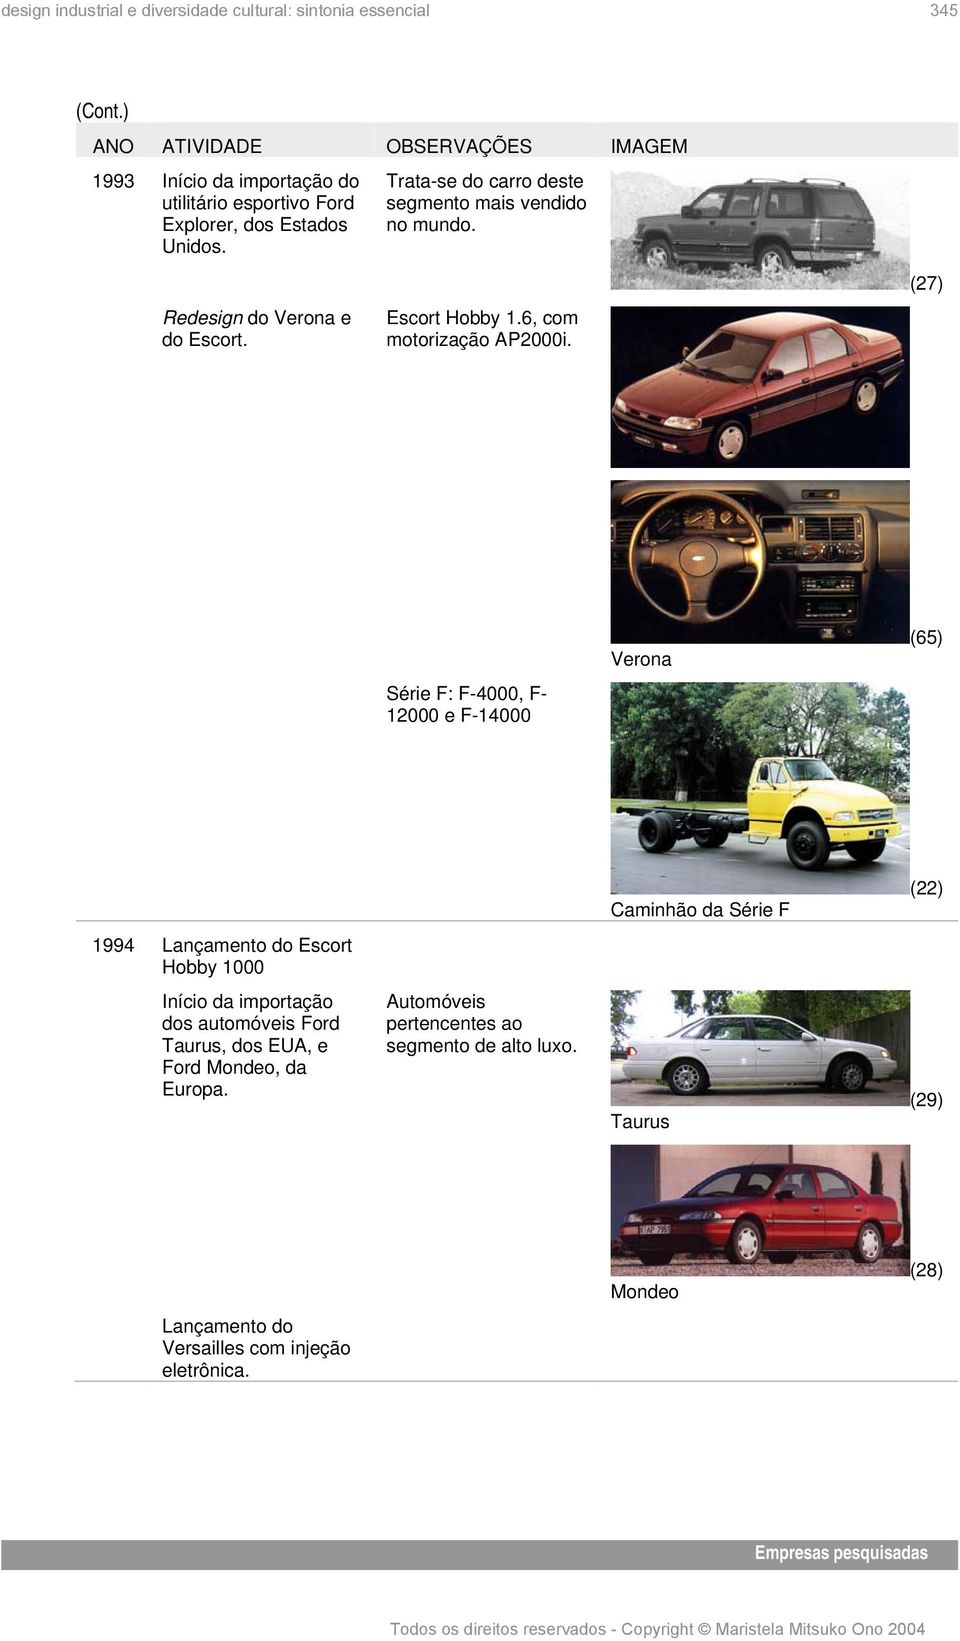 (27) Verona (65) Série F: F-4000, F- 12000 e F-14000 Caminhão da Série F (22) 1994 Lançamento do Escort Hobby 1000 Início da importação dos automóveis